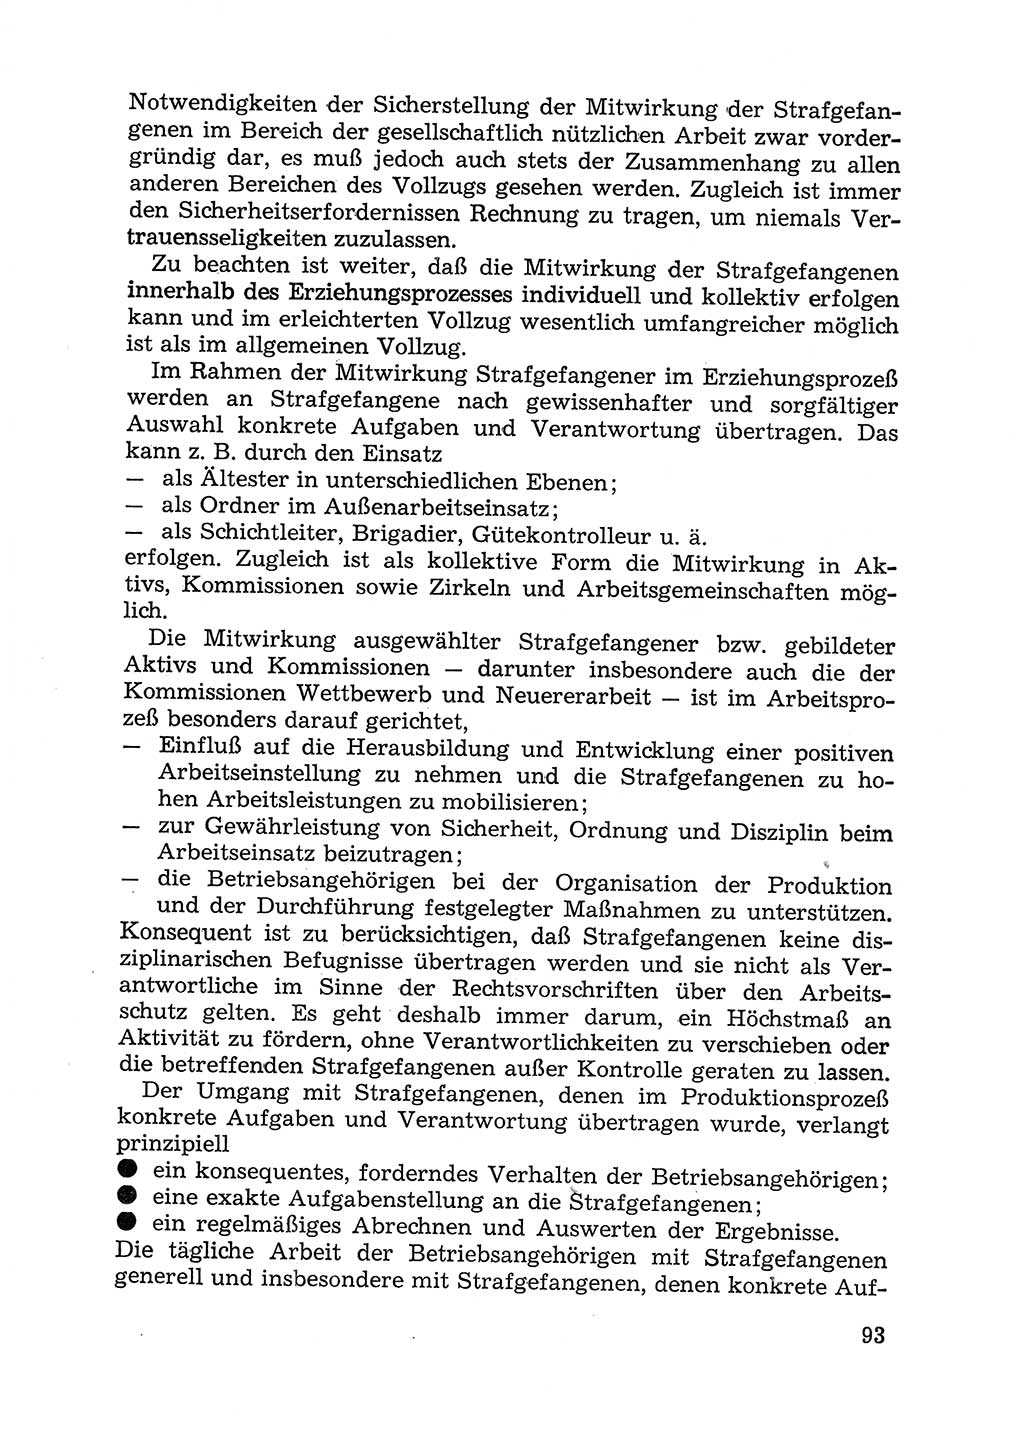 Handbuch für Betriebsangehörige, Abteilung Strafvollzug (SV) [Ministerium des Innern (MdI) Deutsche Demokratische Republik (DDR)] 1981, Seite 93 (Hb. BA Abt. SV MdI DDR 1981, S. 93)